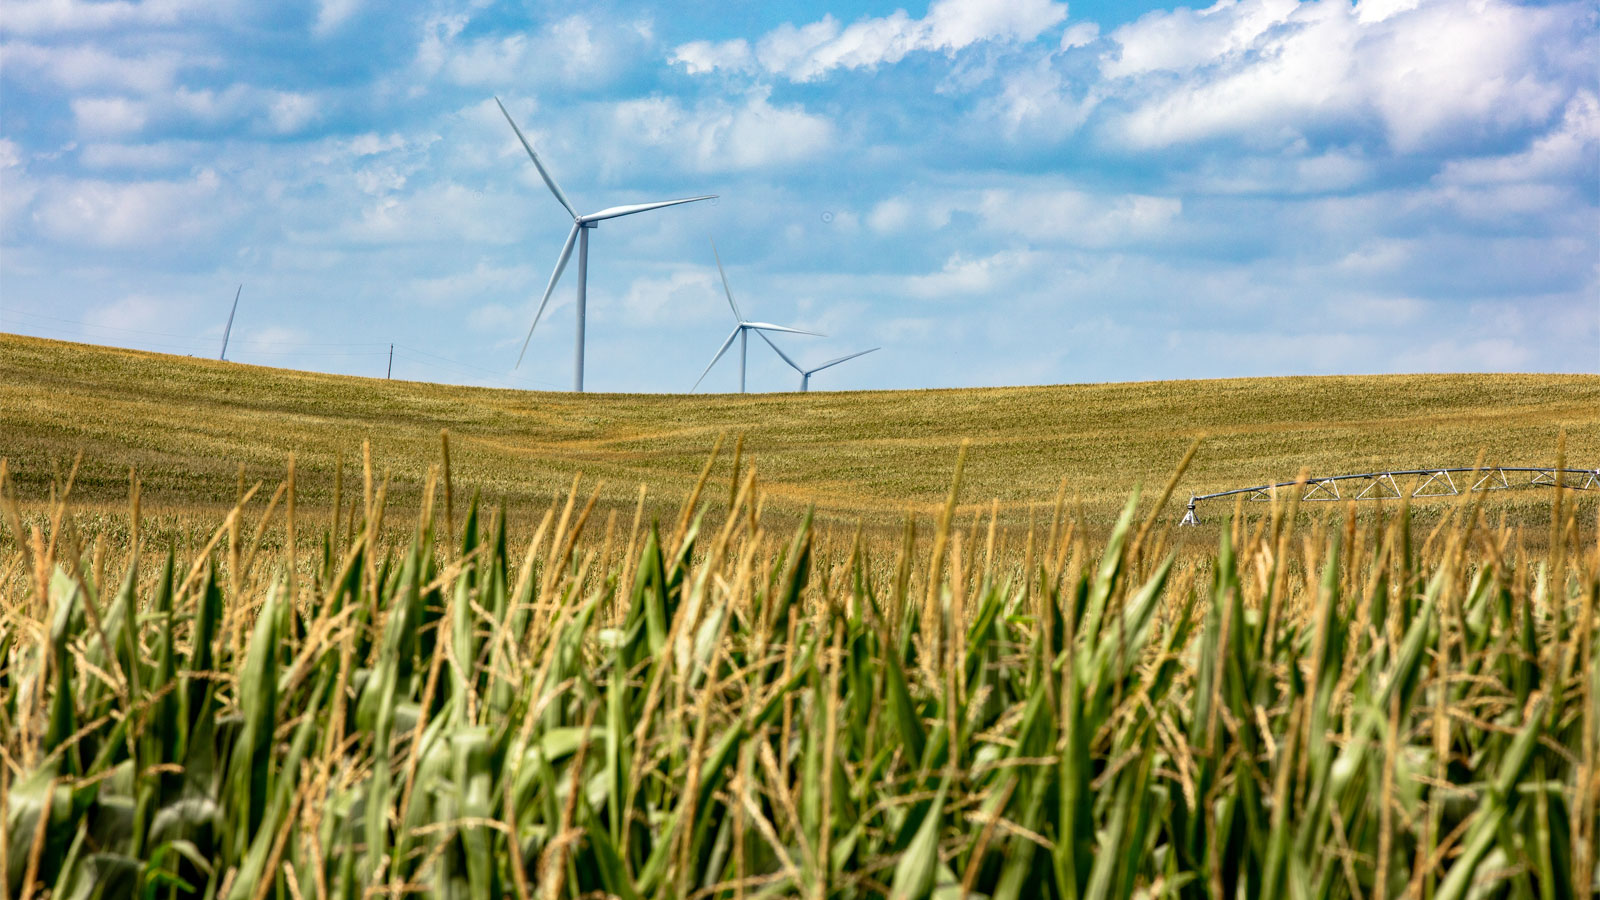 Wind turbines in a field of corn